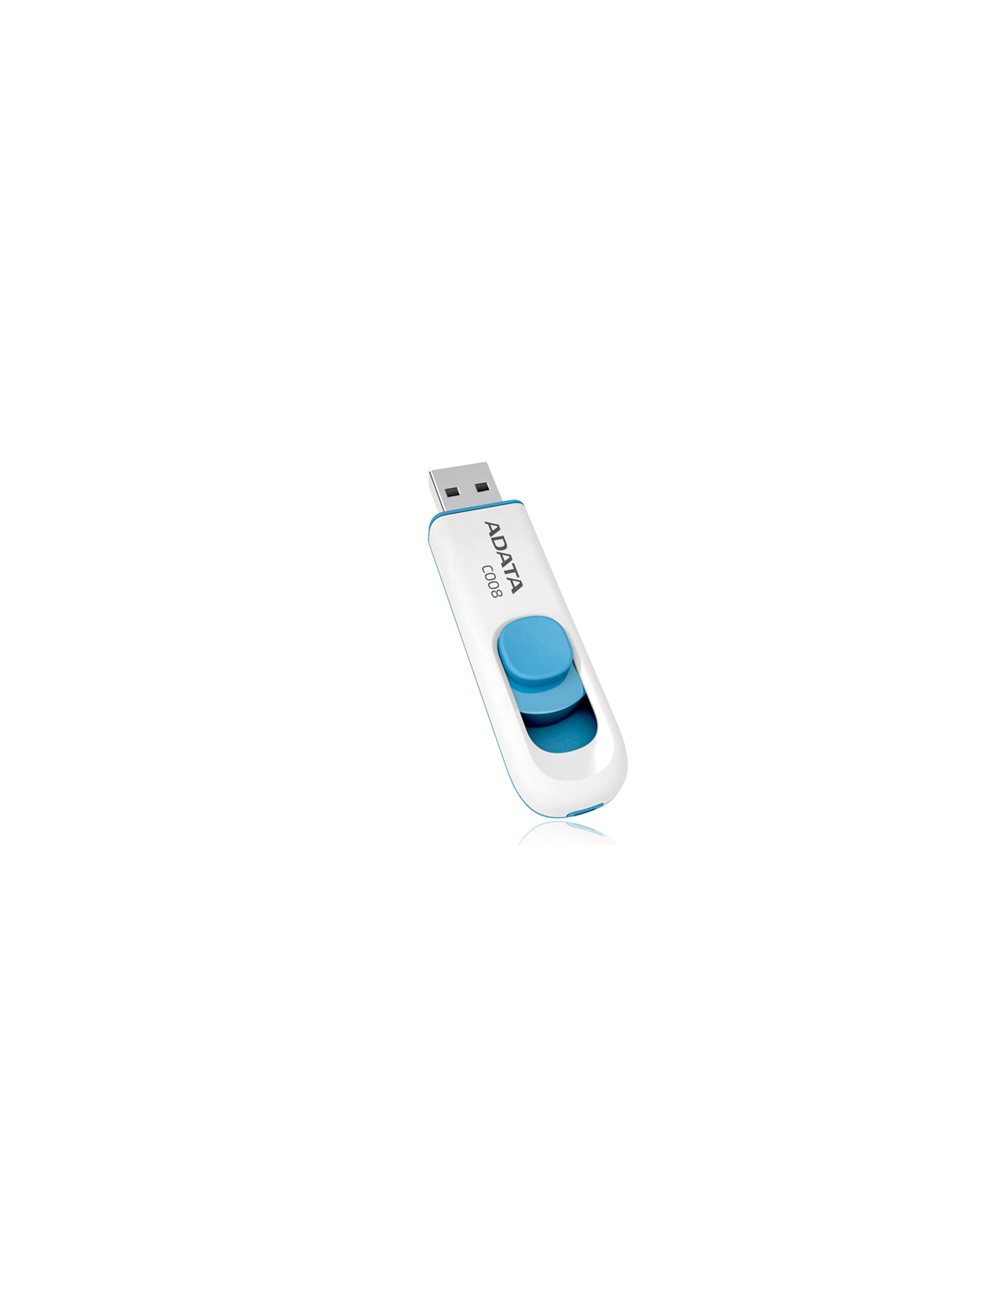 ADATA 16GB USB Stick C008 Slider USB 2.0